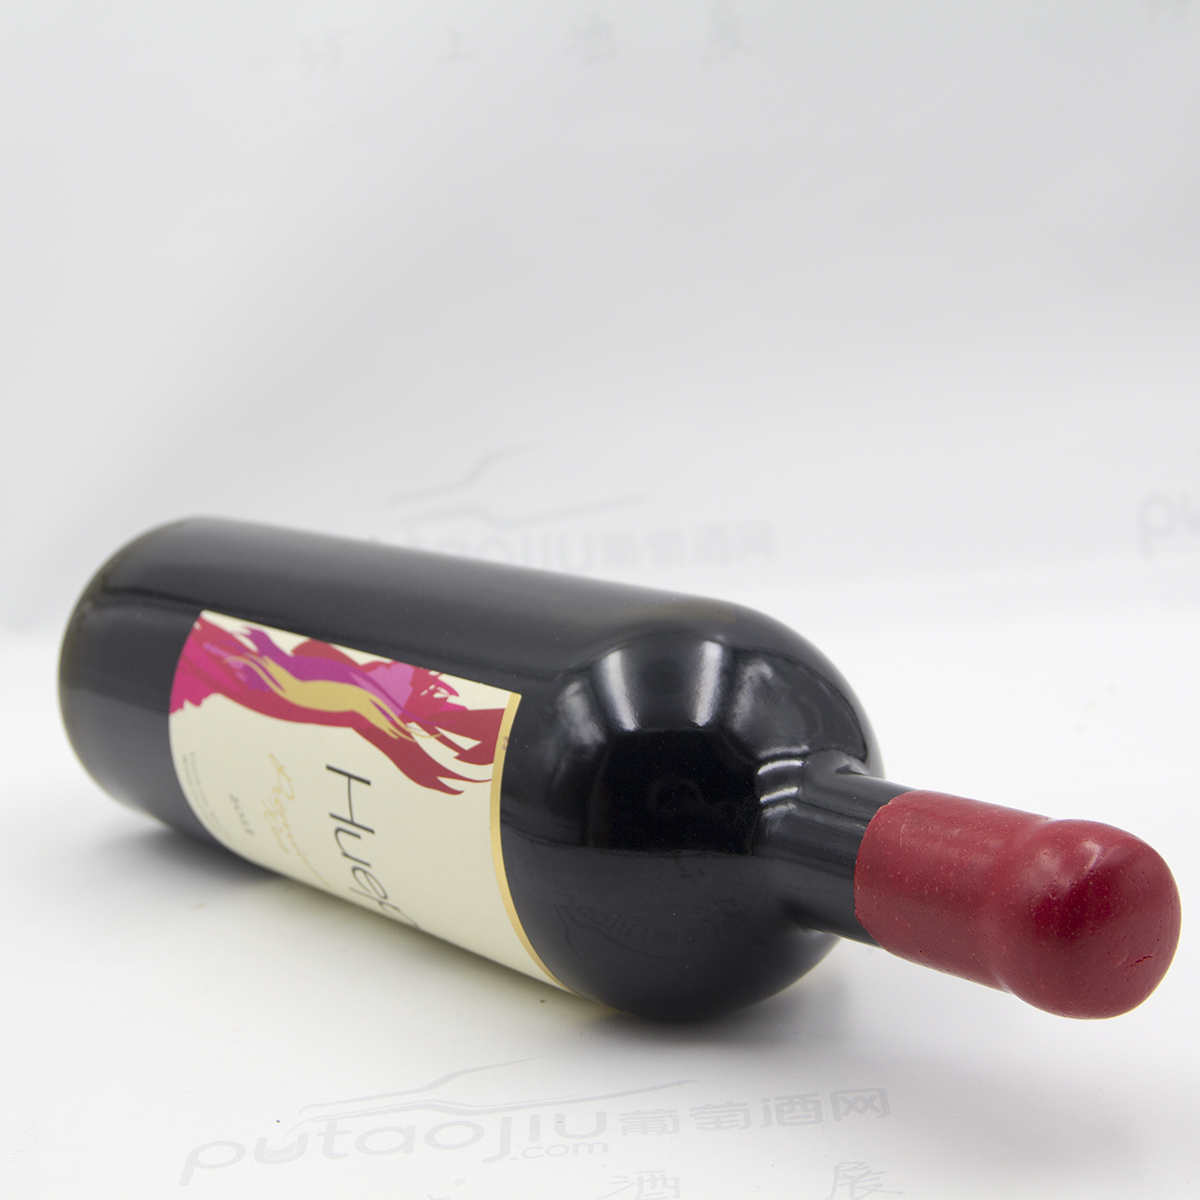 智利中央山谷格雷曼酒庄瓦帕混酿精选有机干红葡萄酒